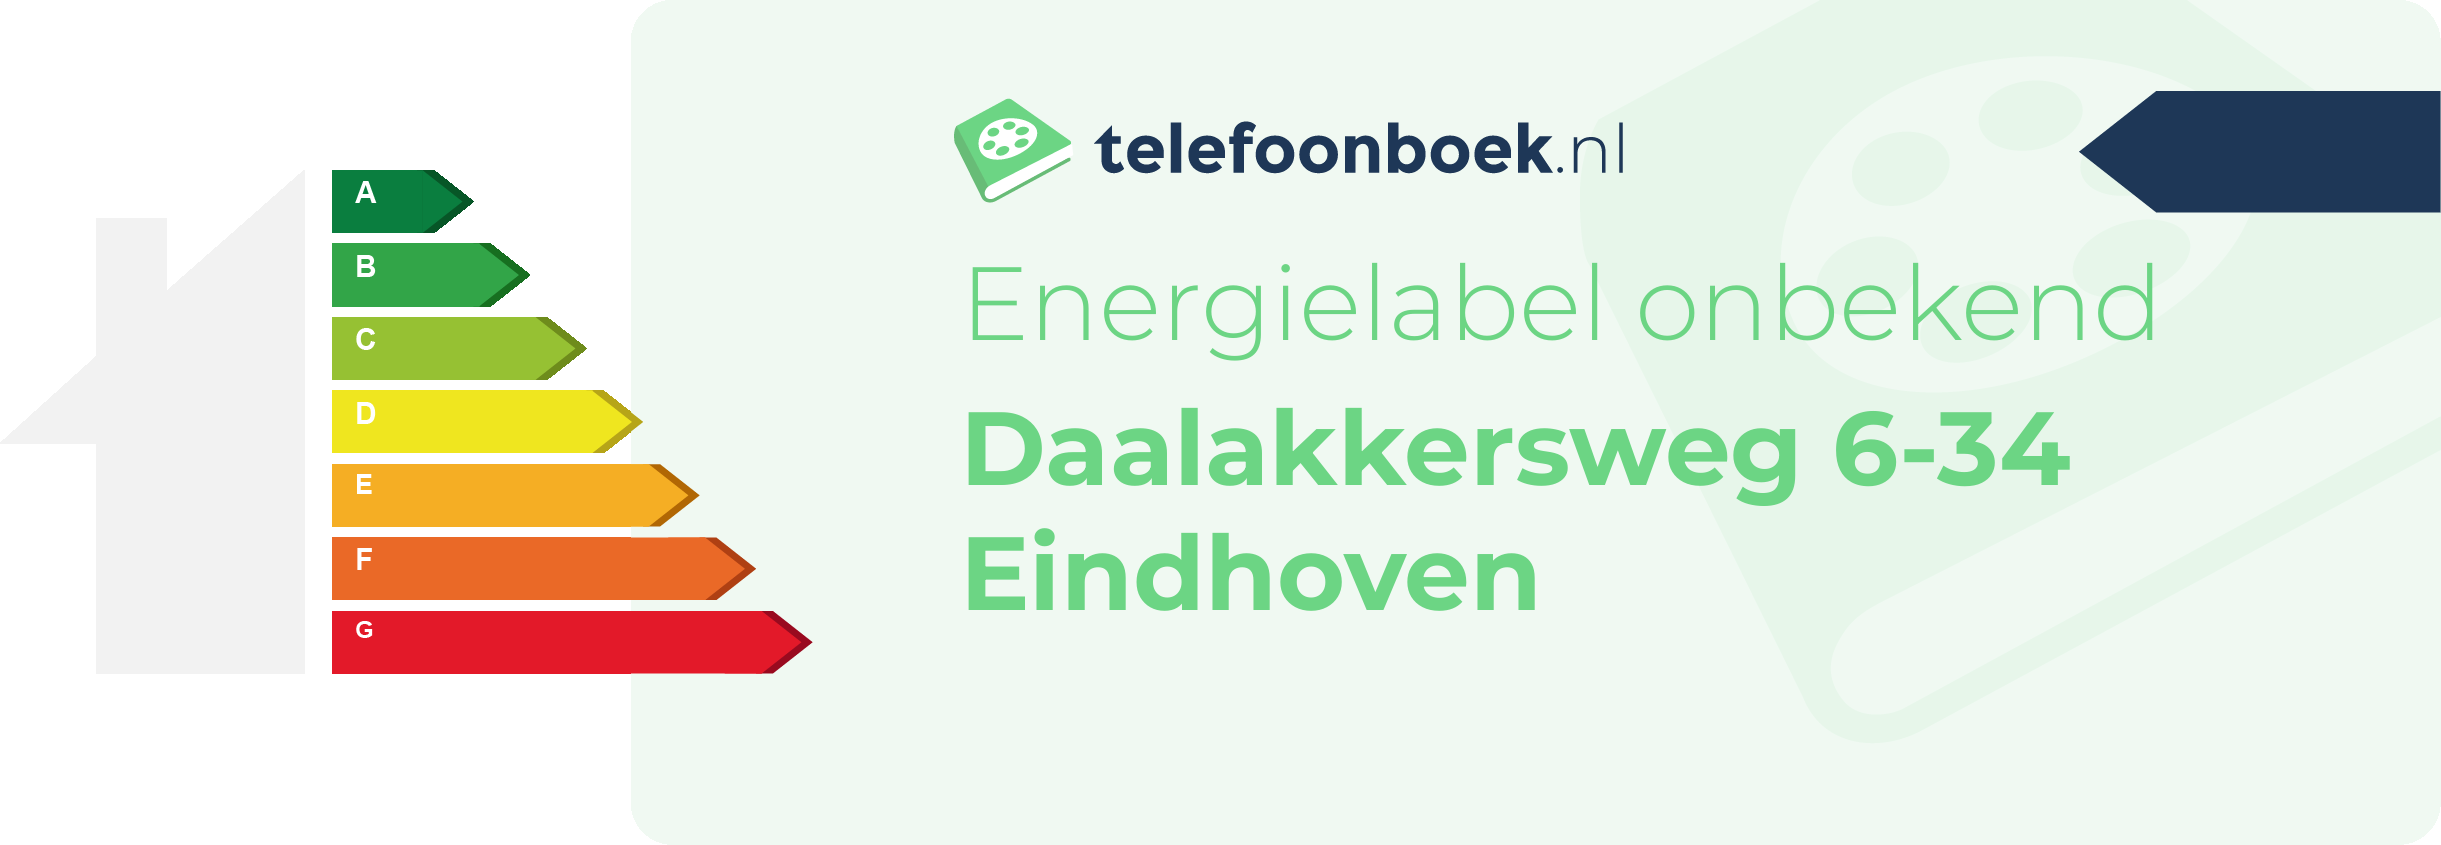 Energielabel Daalakkersweg 6-34 Eindhoven